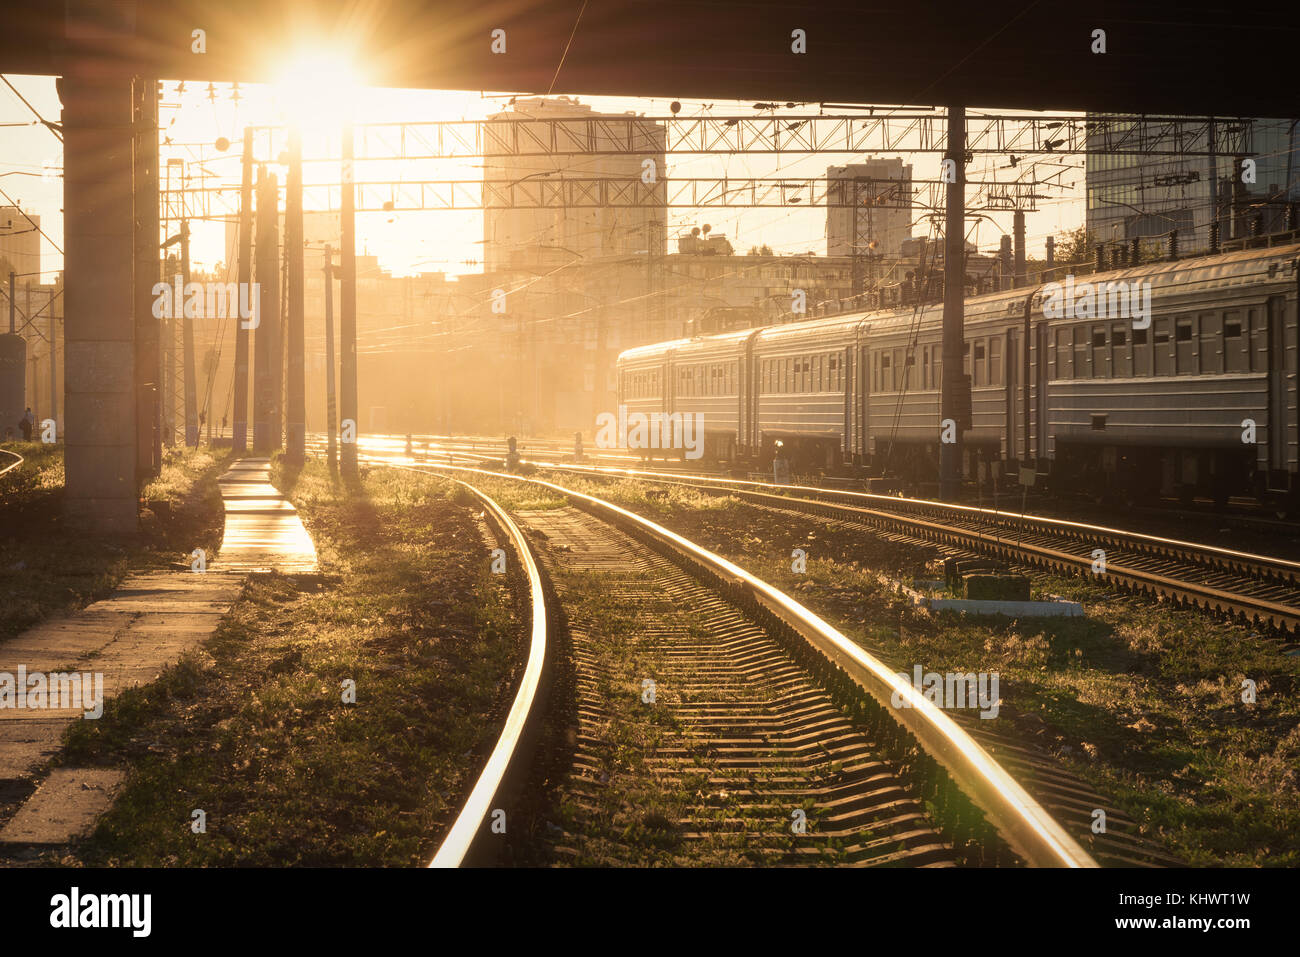 Schöne Aussicht mit Ampel, Eisenbahn- und fahrenden Zug bei Sonnenuntergang. Bahnhof. Bunte industrielle Landschaft mit Bahnsteig, Semaphor Stockfoto